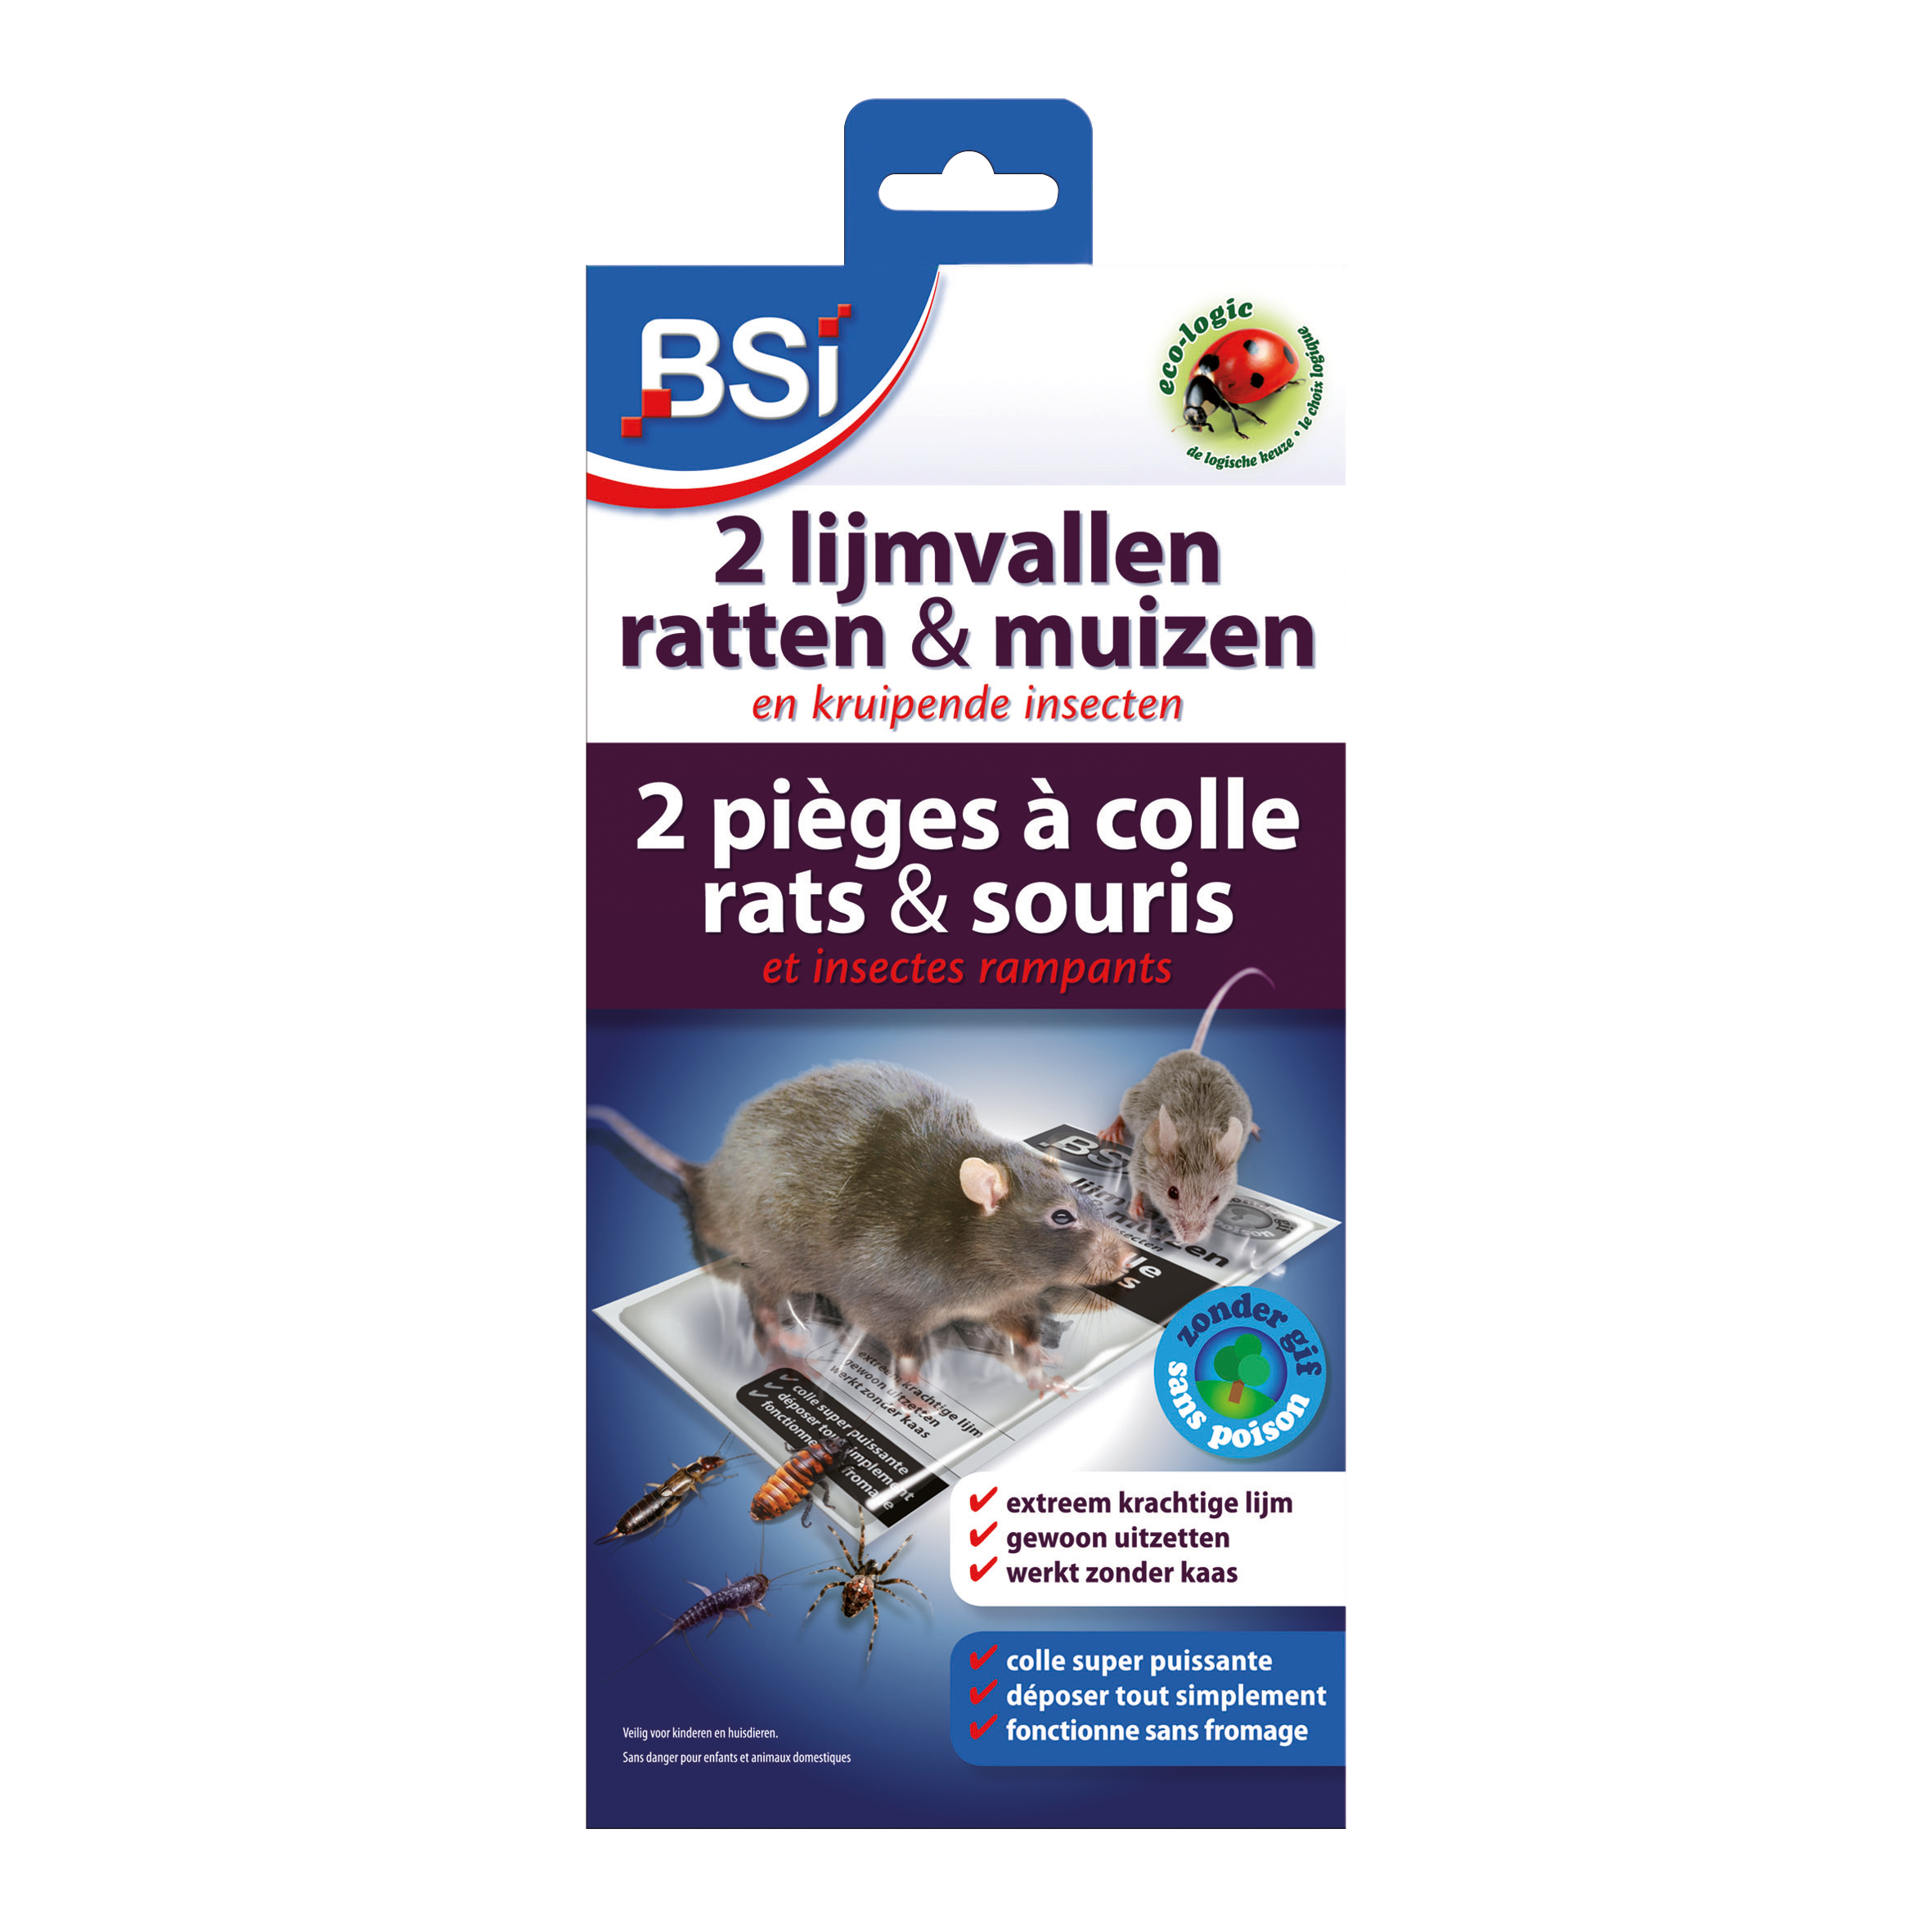 Piège à souris et rats électrique BSI